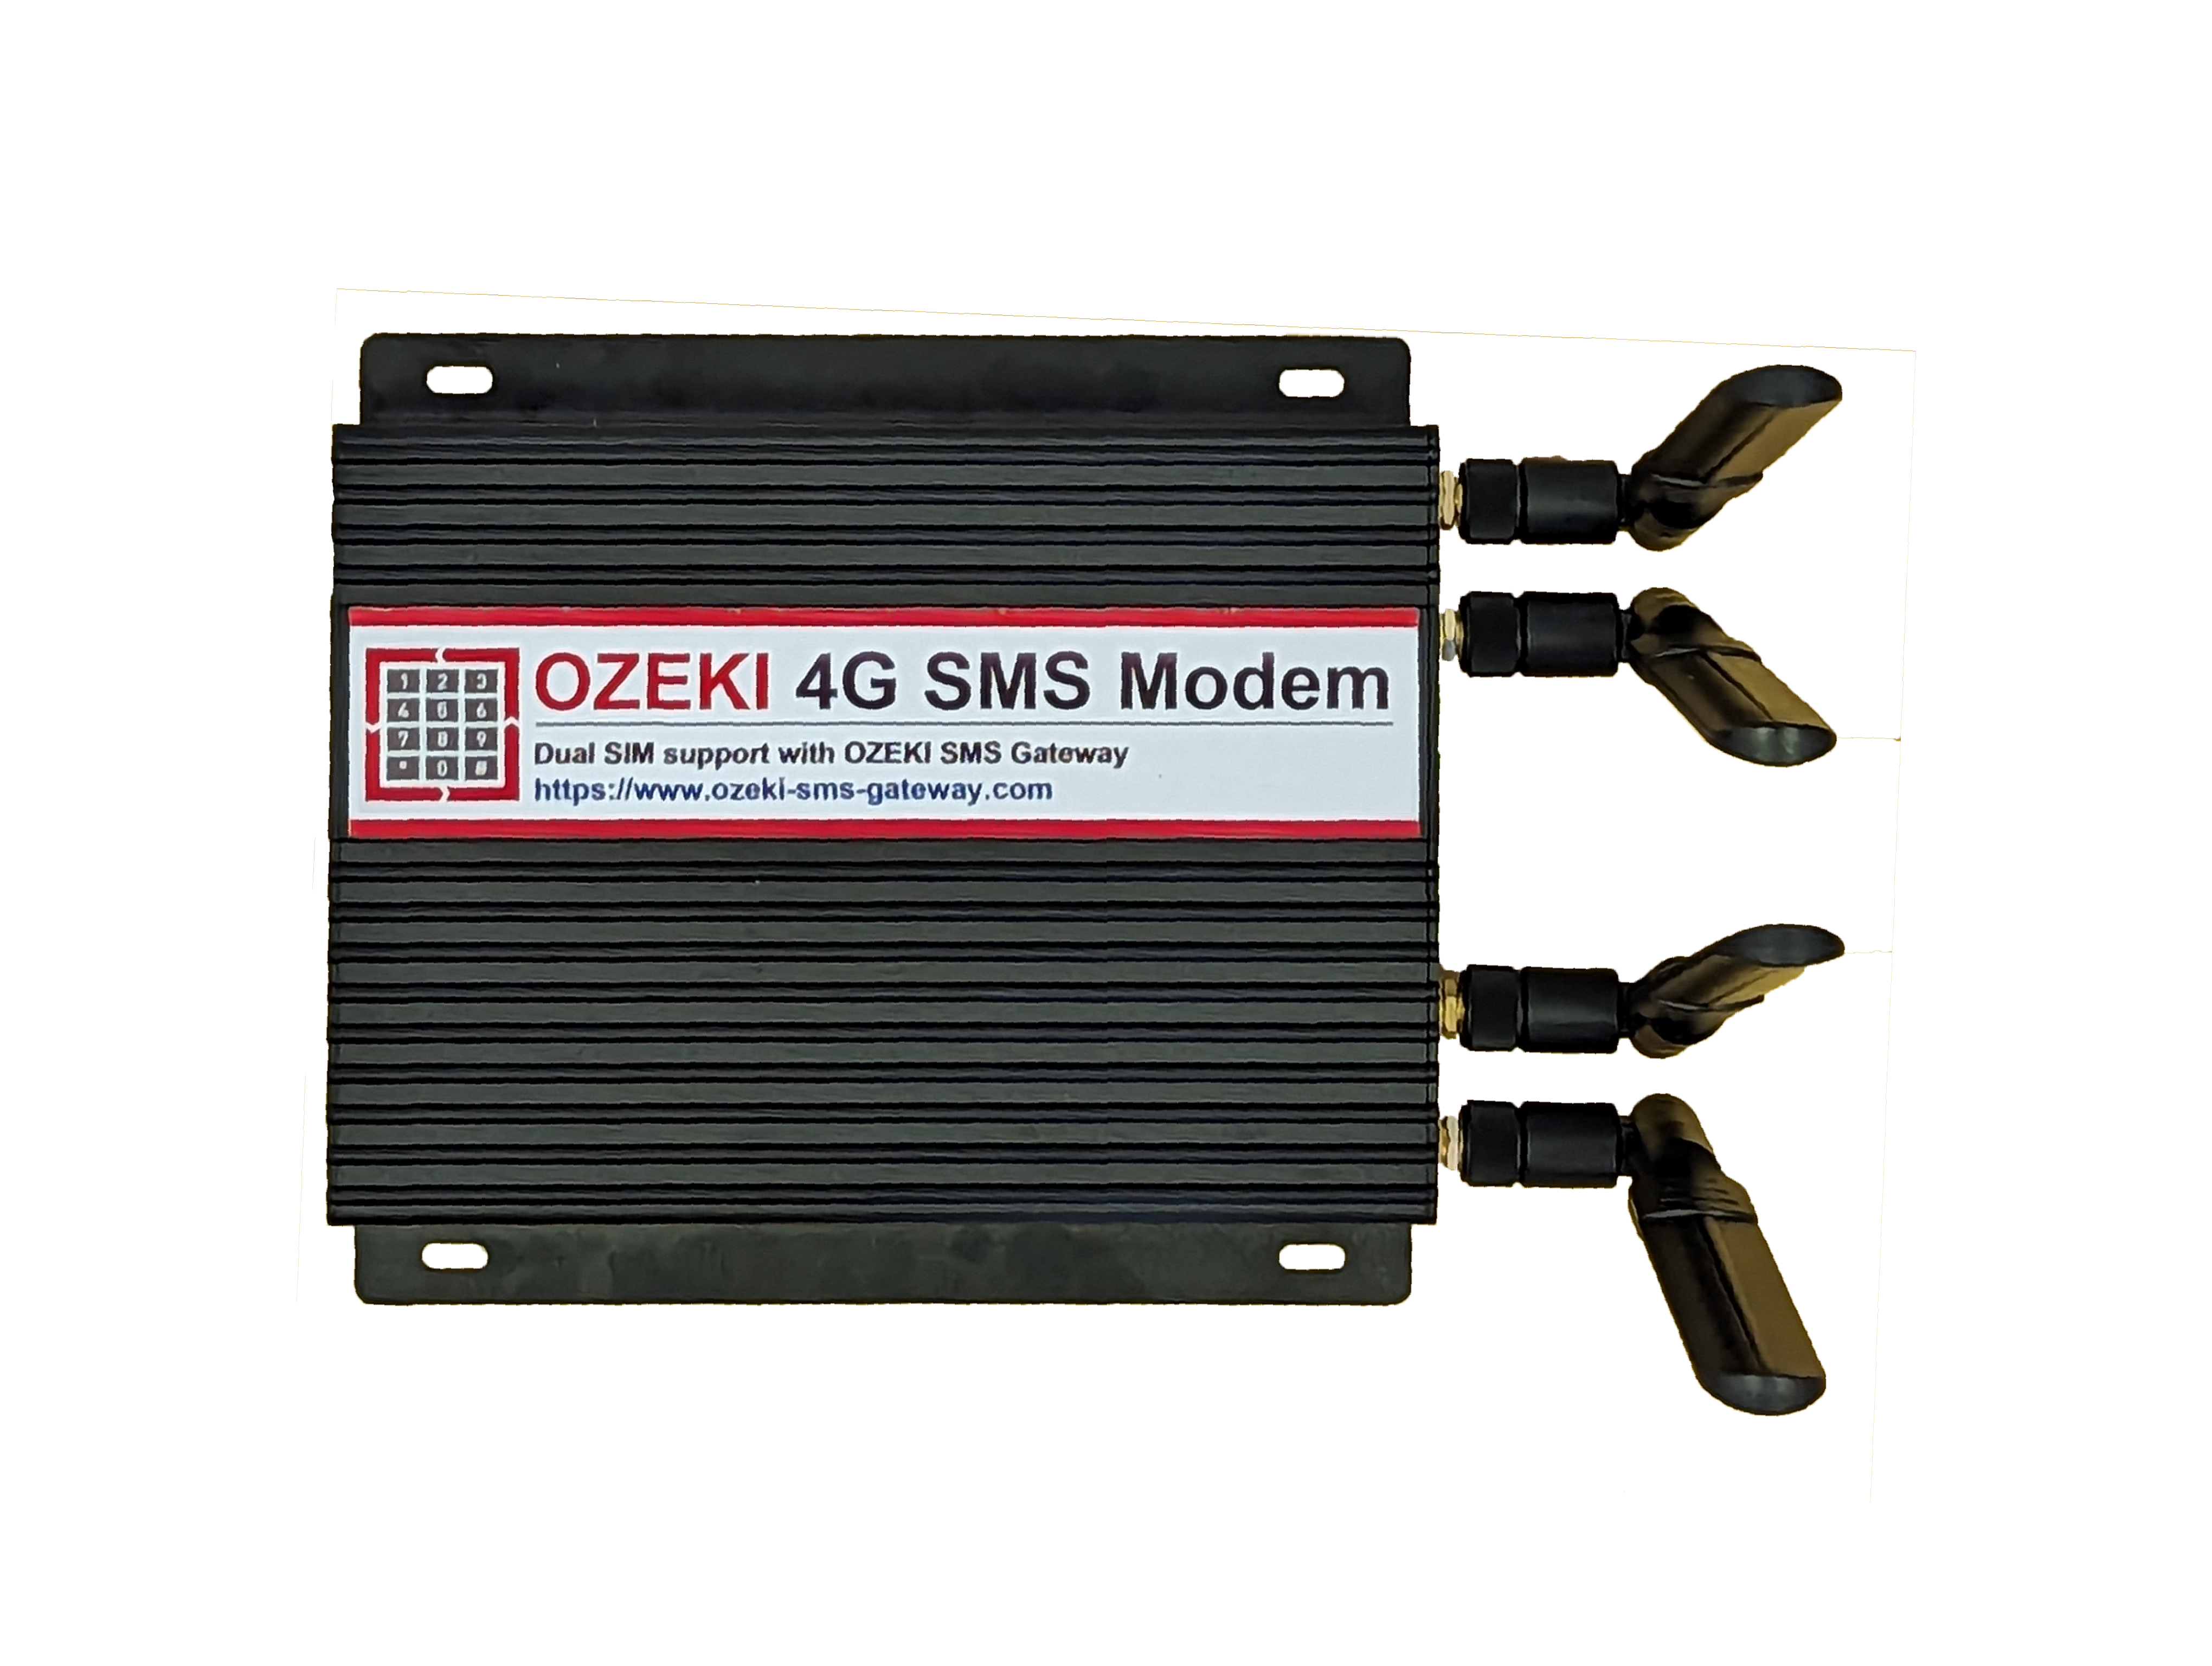 ozeki 4g lte sms dual sim modem photo